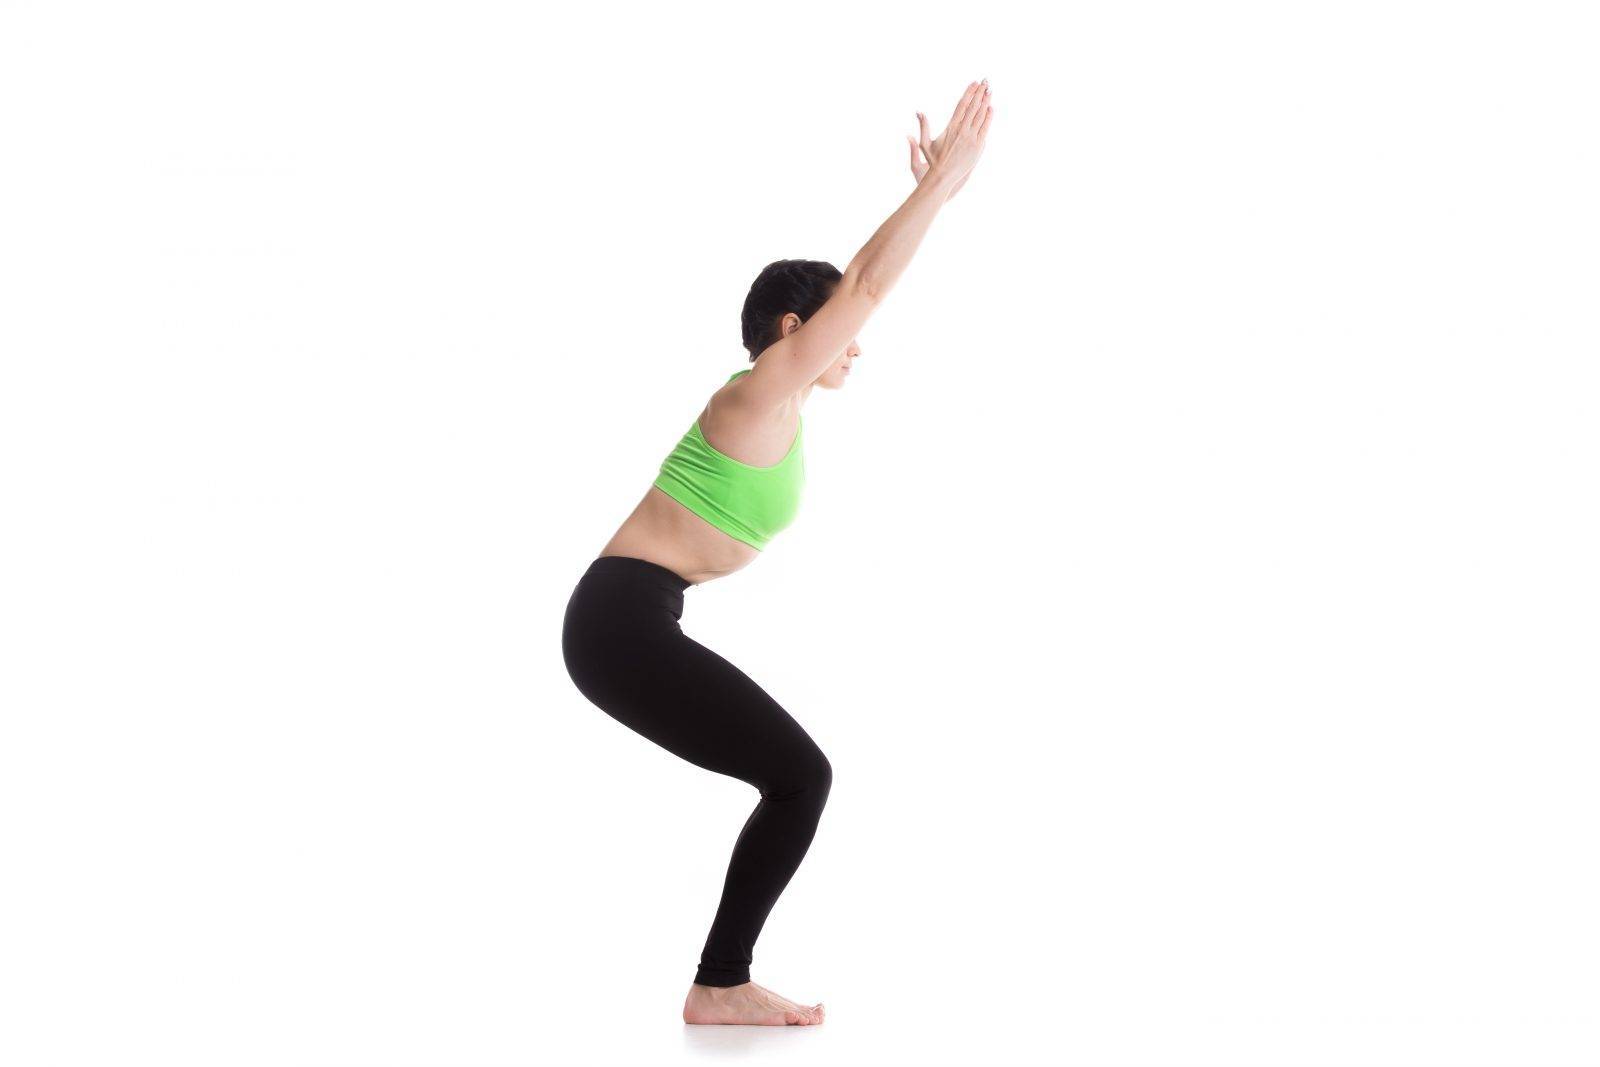 Халасана или поза плуга в йоге: техника выполнения, польза, противопоказания